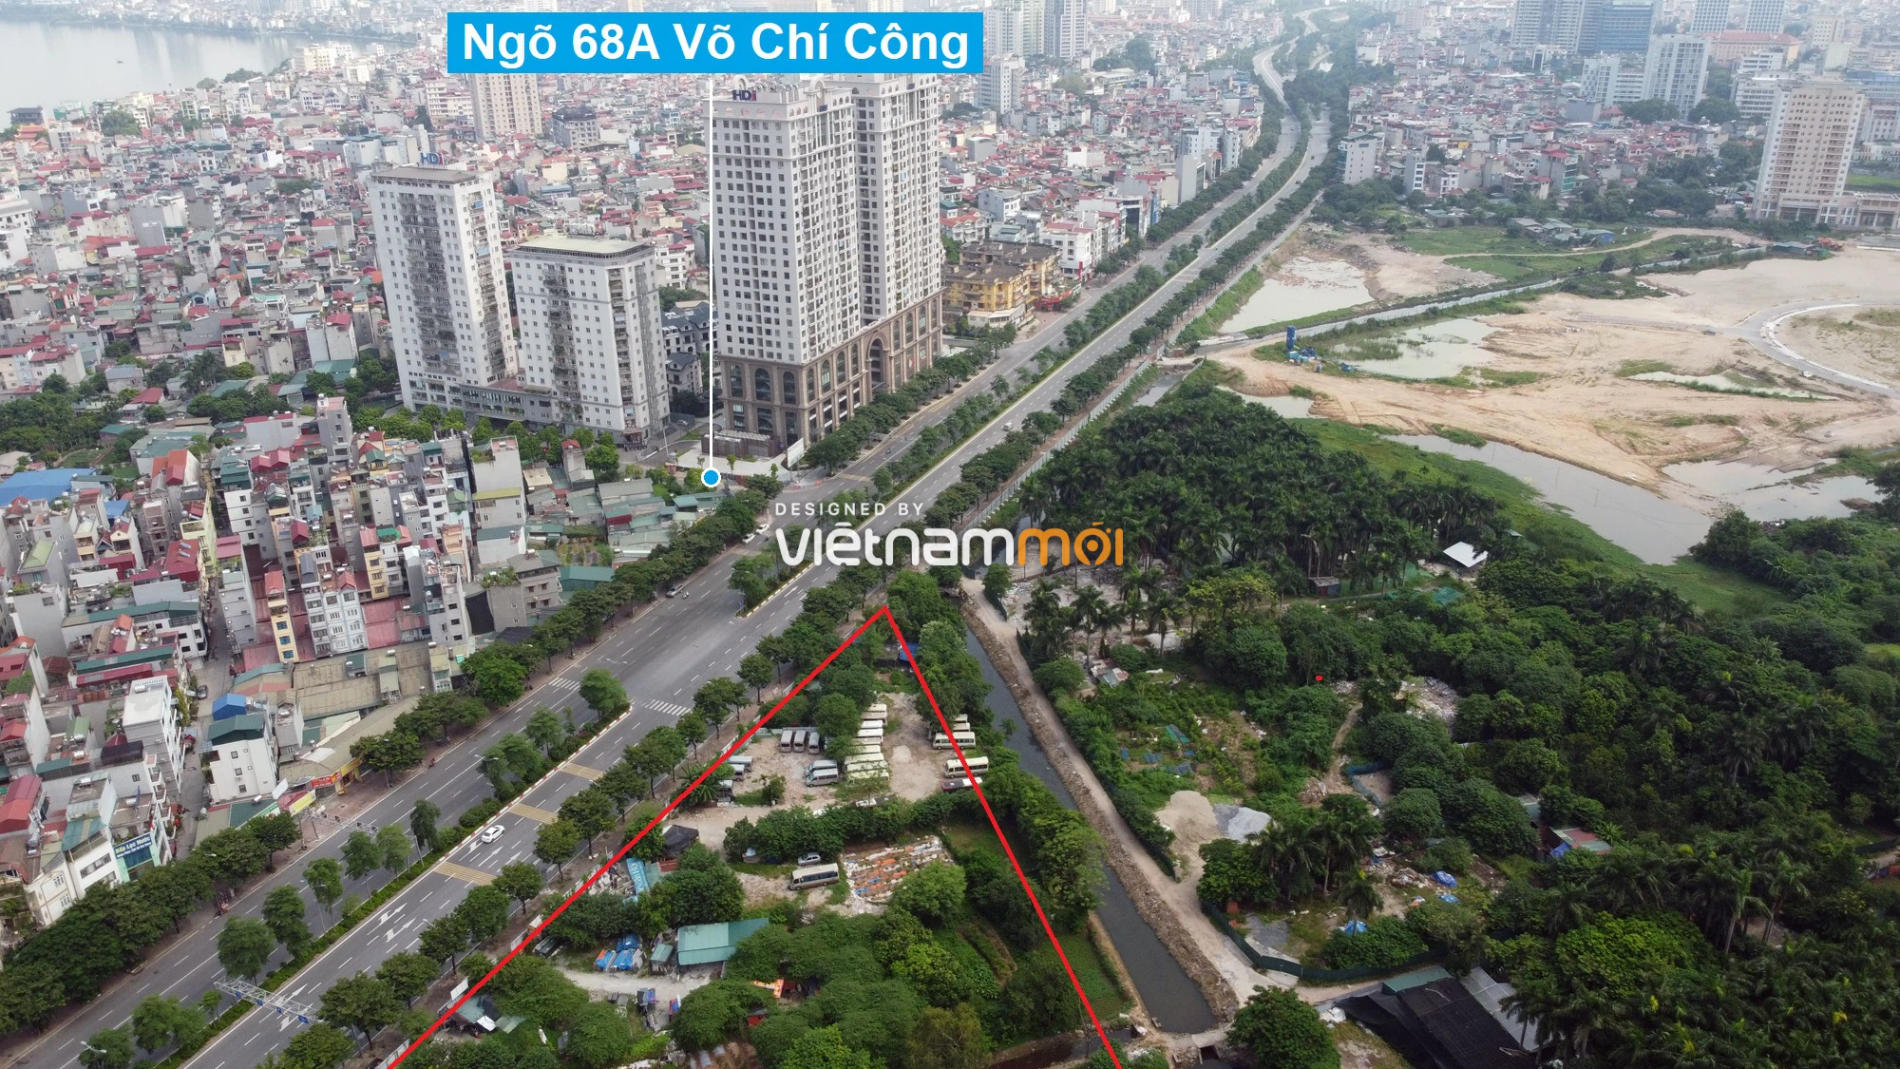 Những khu đất sắp thu hồi để mở đường ở quận Tây Hồ, Hà Nội (phần 1) - Ảnh 10.